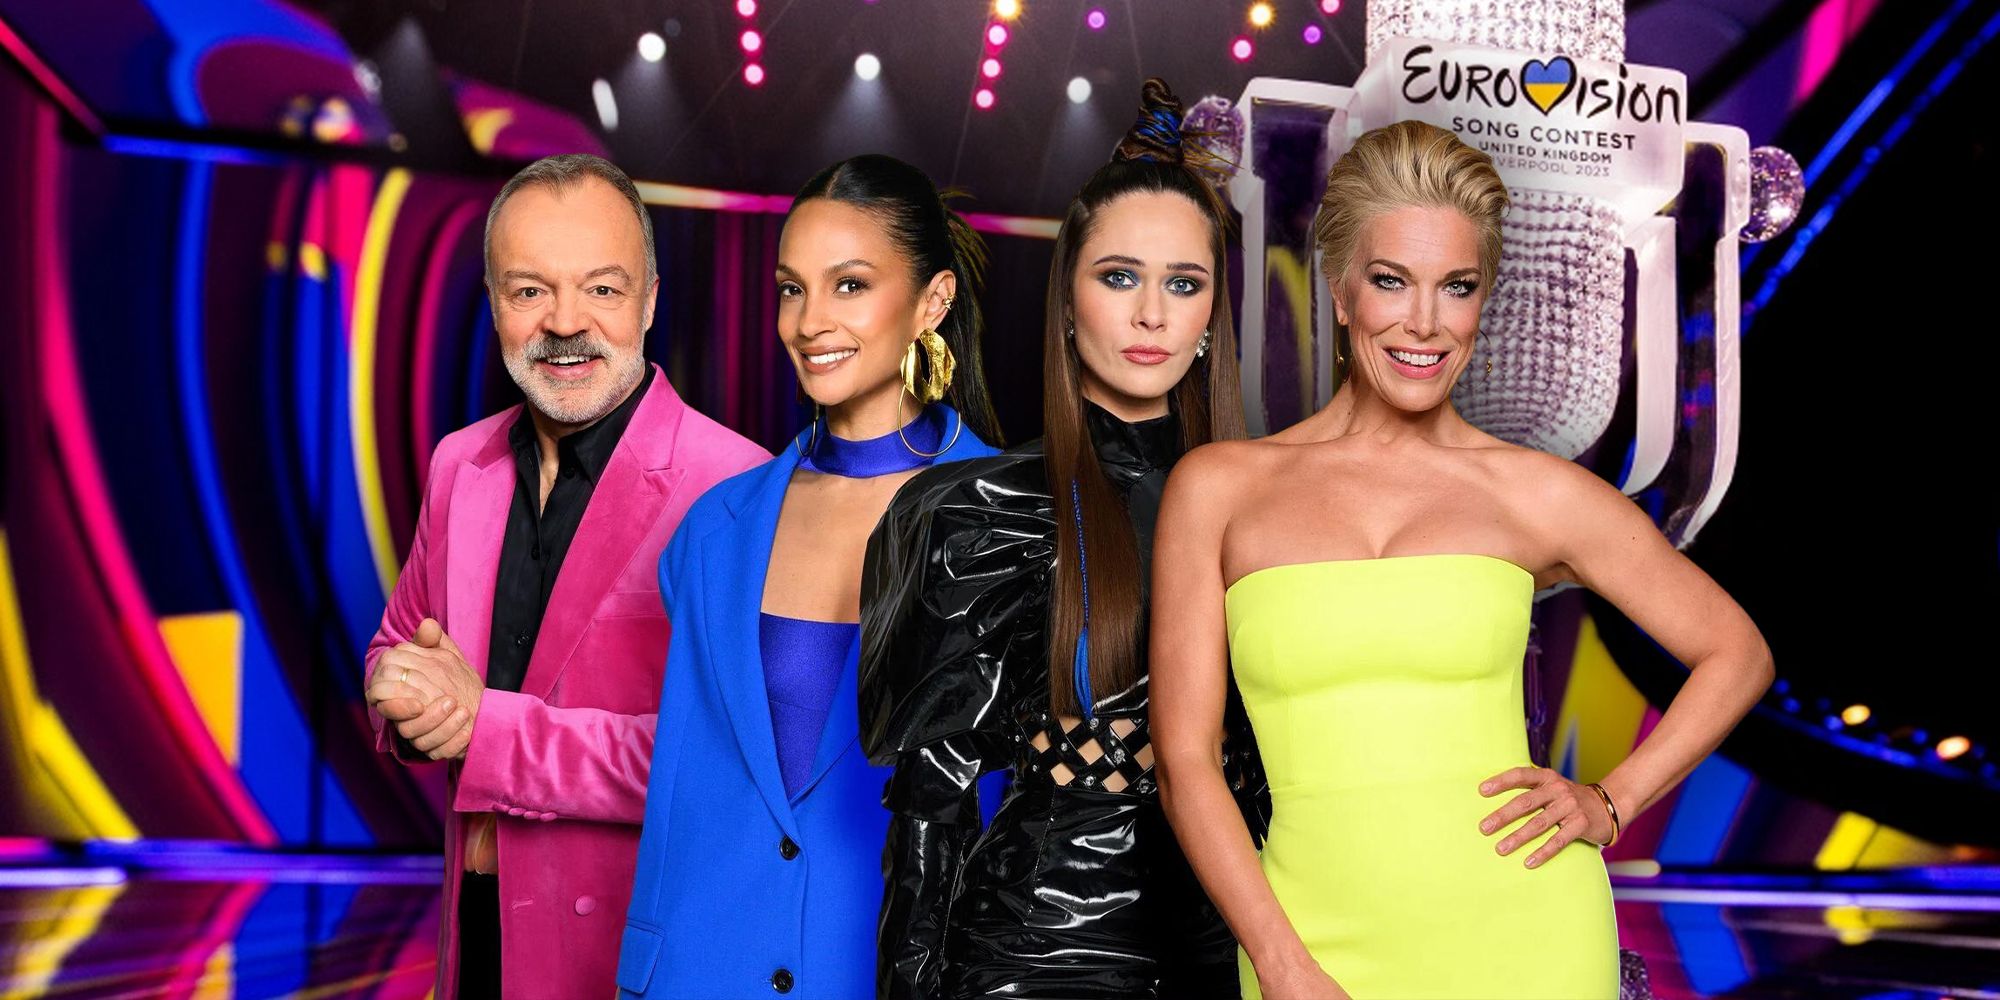 Eurovision judges